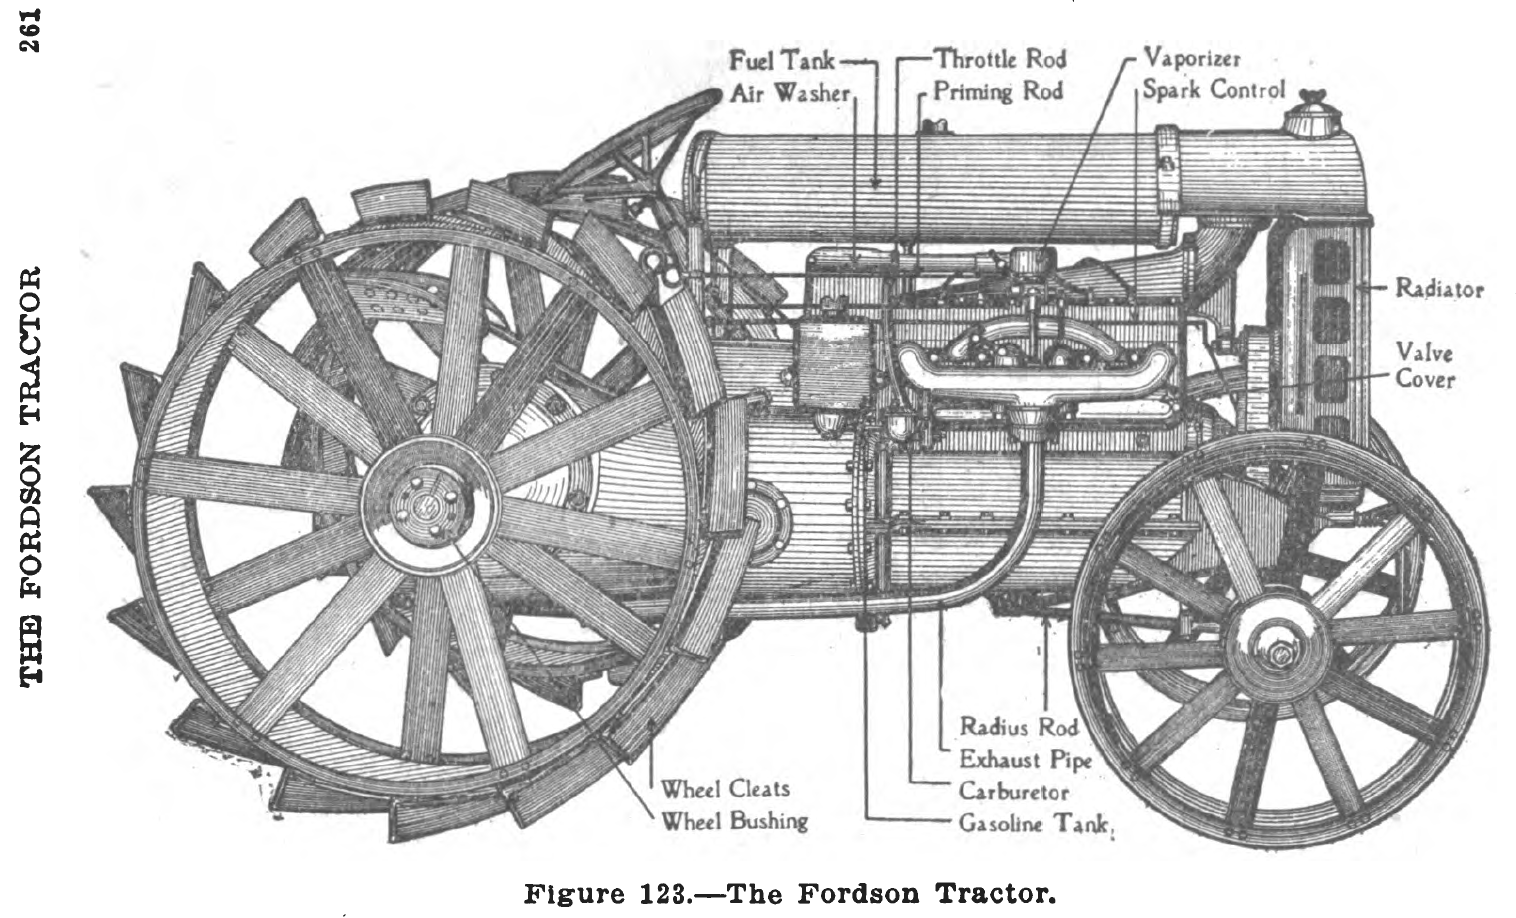 1919-es ábra a Fordson traktor szerkezetéről